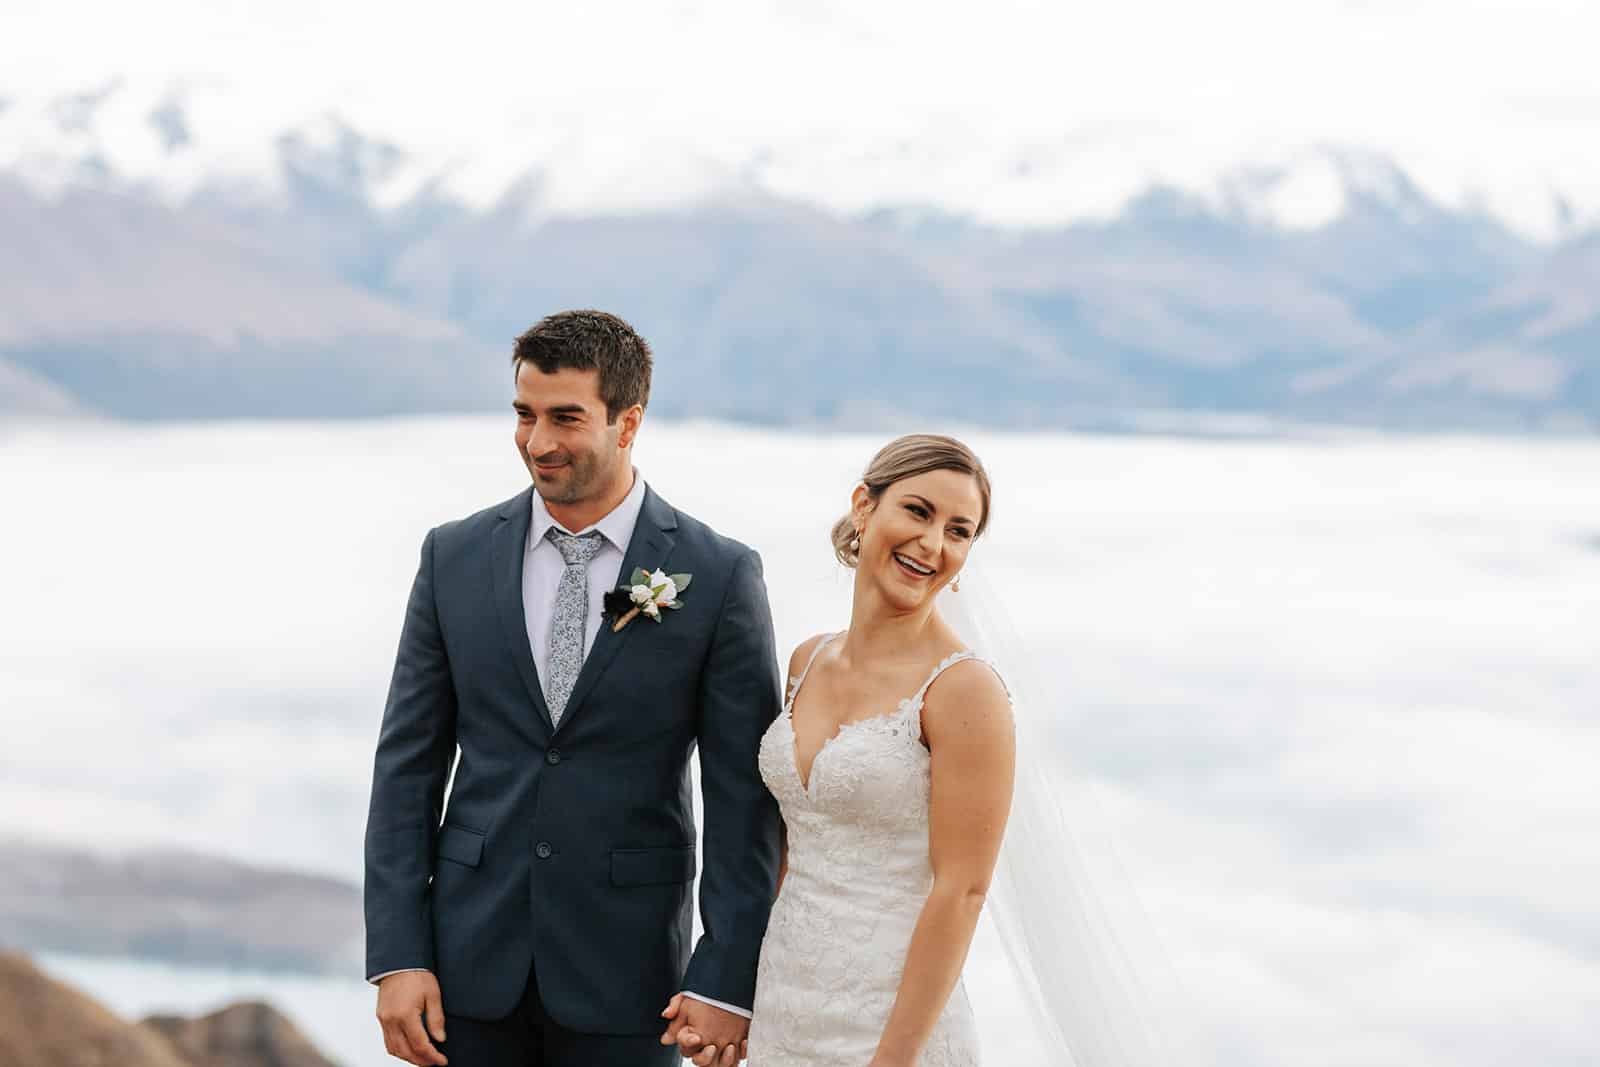 Queenstown Heli Wedding in Winter by Heli Weddings NZ